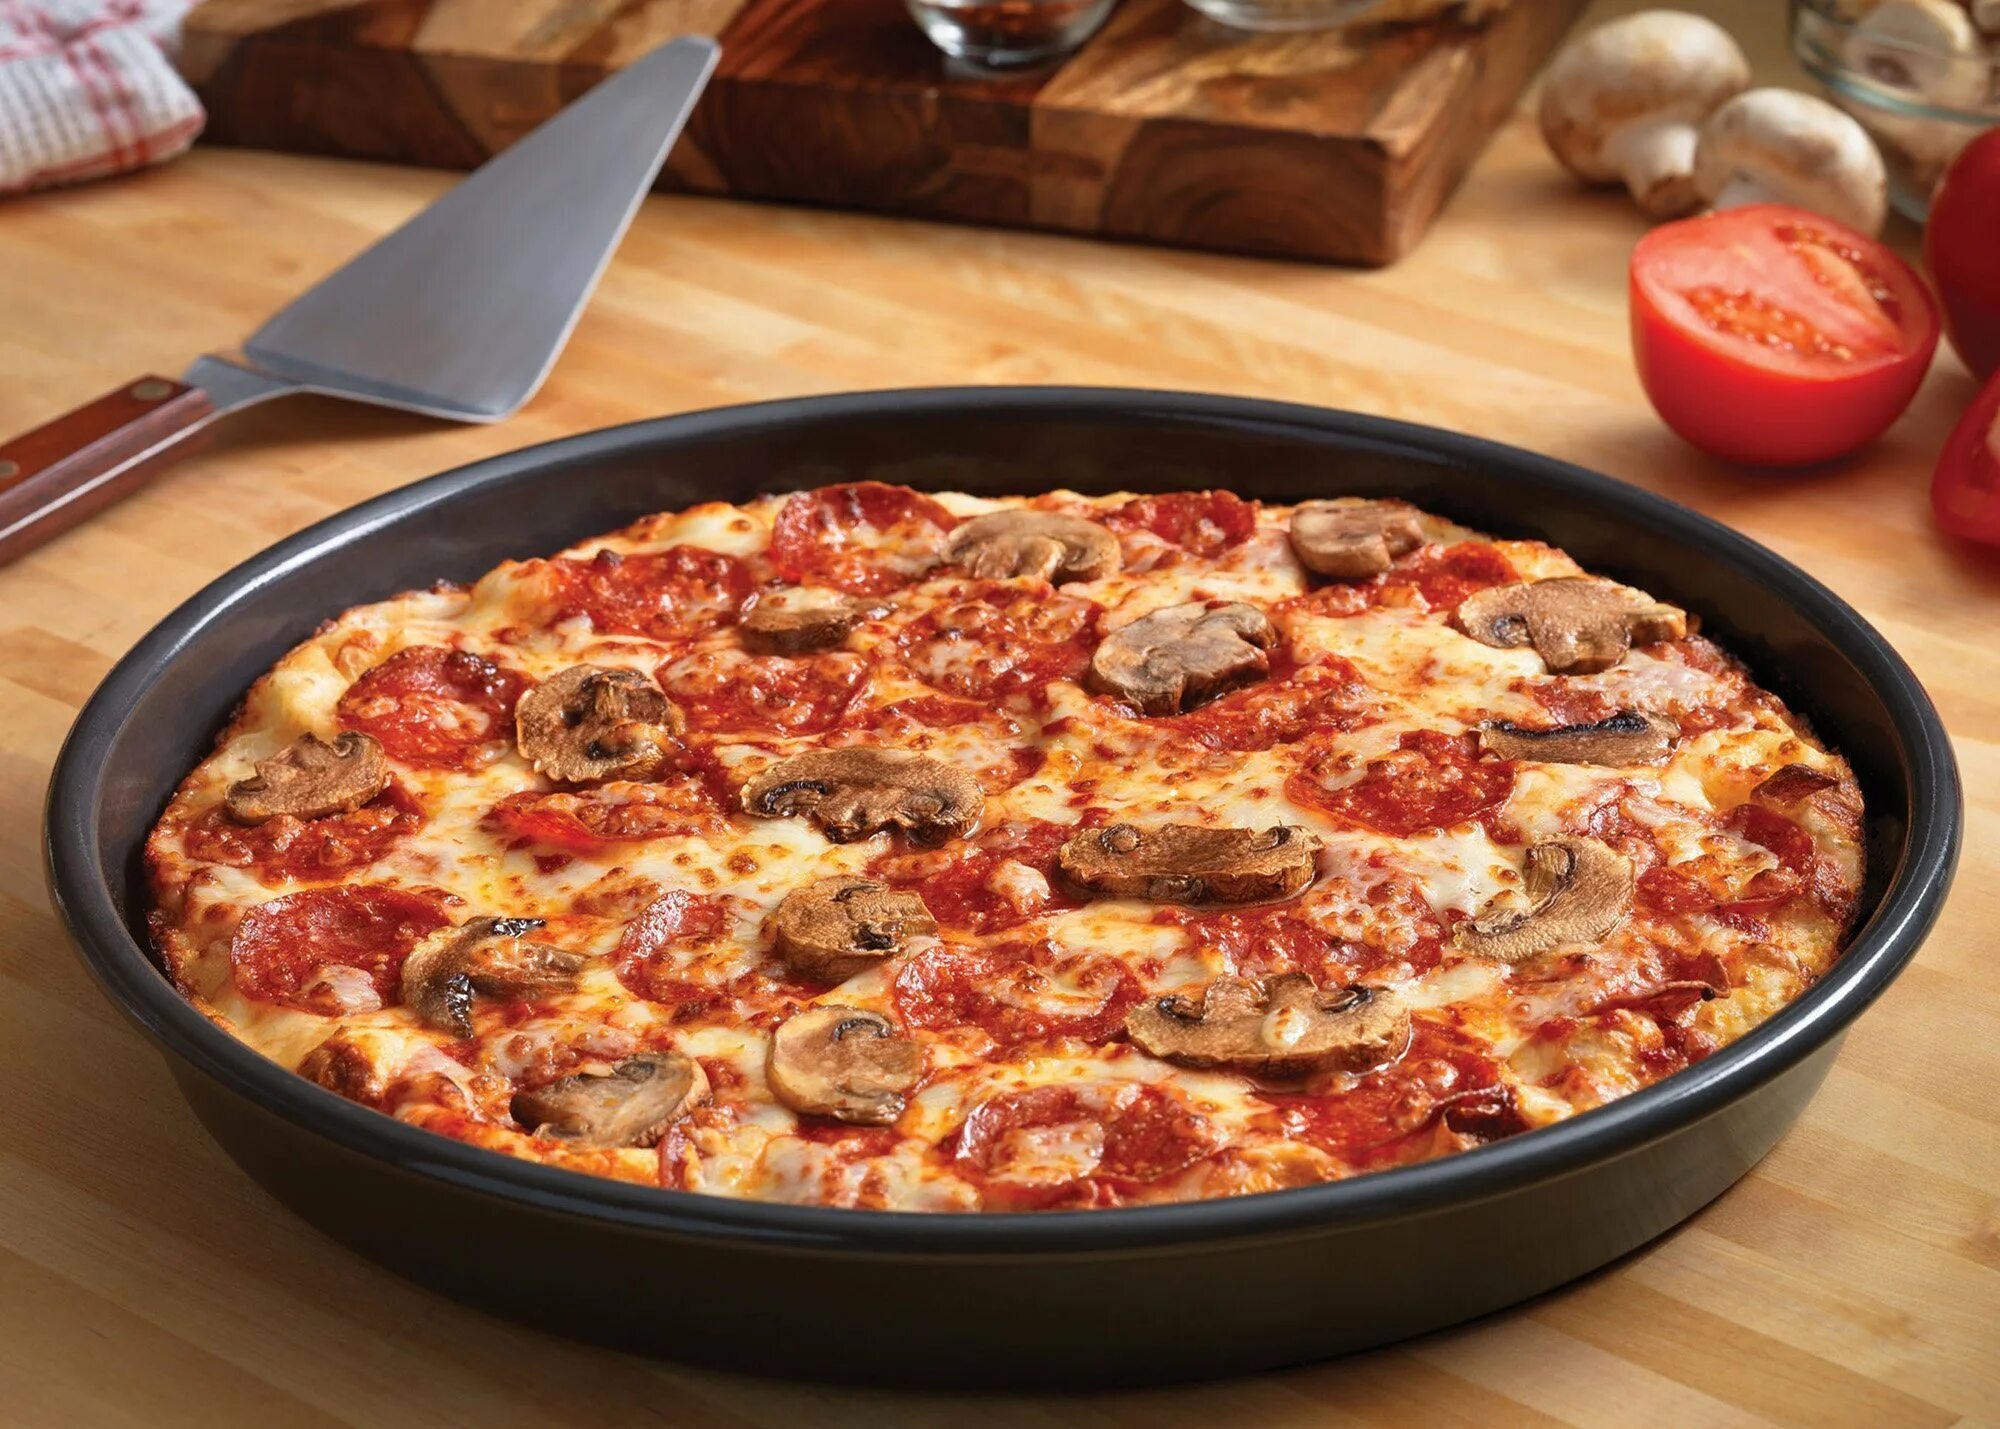 Midasbay com. "Пицца". Пицца на сковороде. Пицца домашняя на сковороде. Быстрая пицца на сковороде.